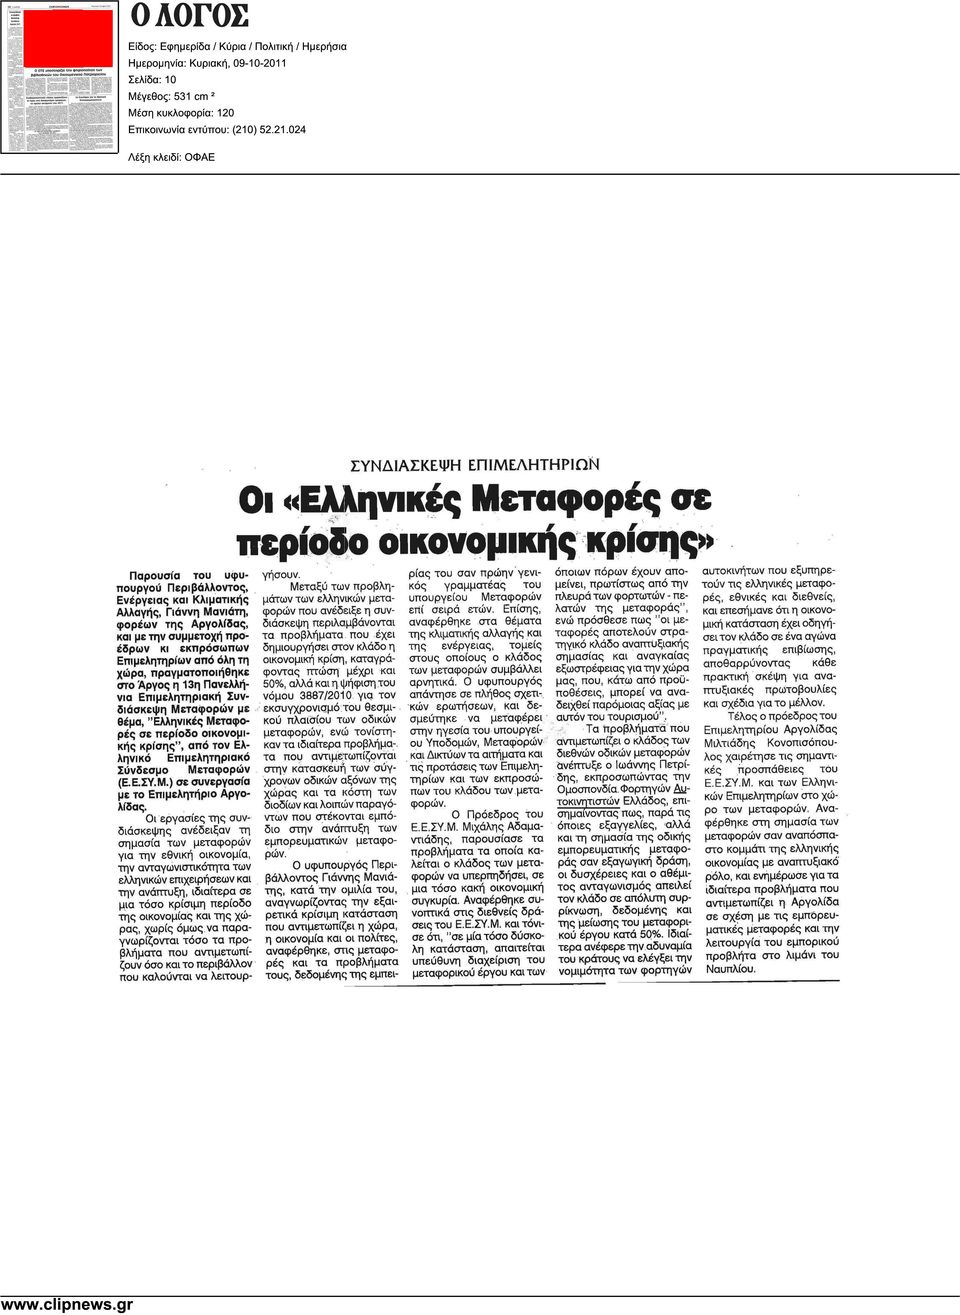 Κλιµατικής των ελληνικών µεταφορών υπουργείου Μεταφορών πλευρά των φορτωτών - πελατών Αλλαγής, Γιάννη Μανιάτη, εθνικές και διεθνείς, που ανέδειξε η συνδιάσκεψη επί σειρά ετών.